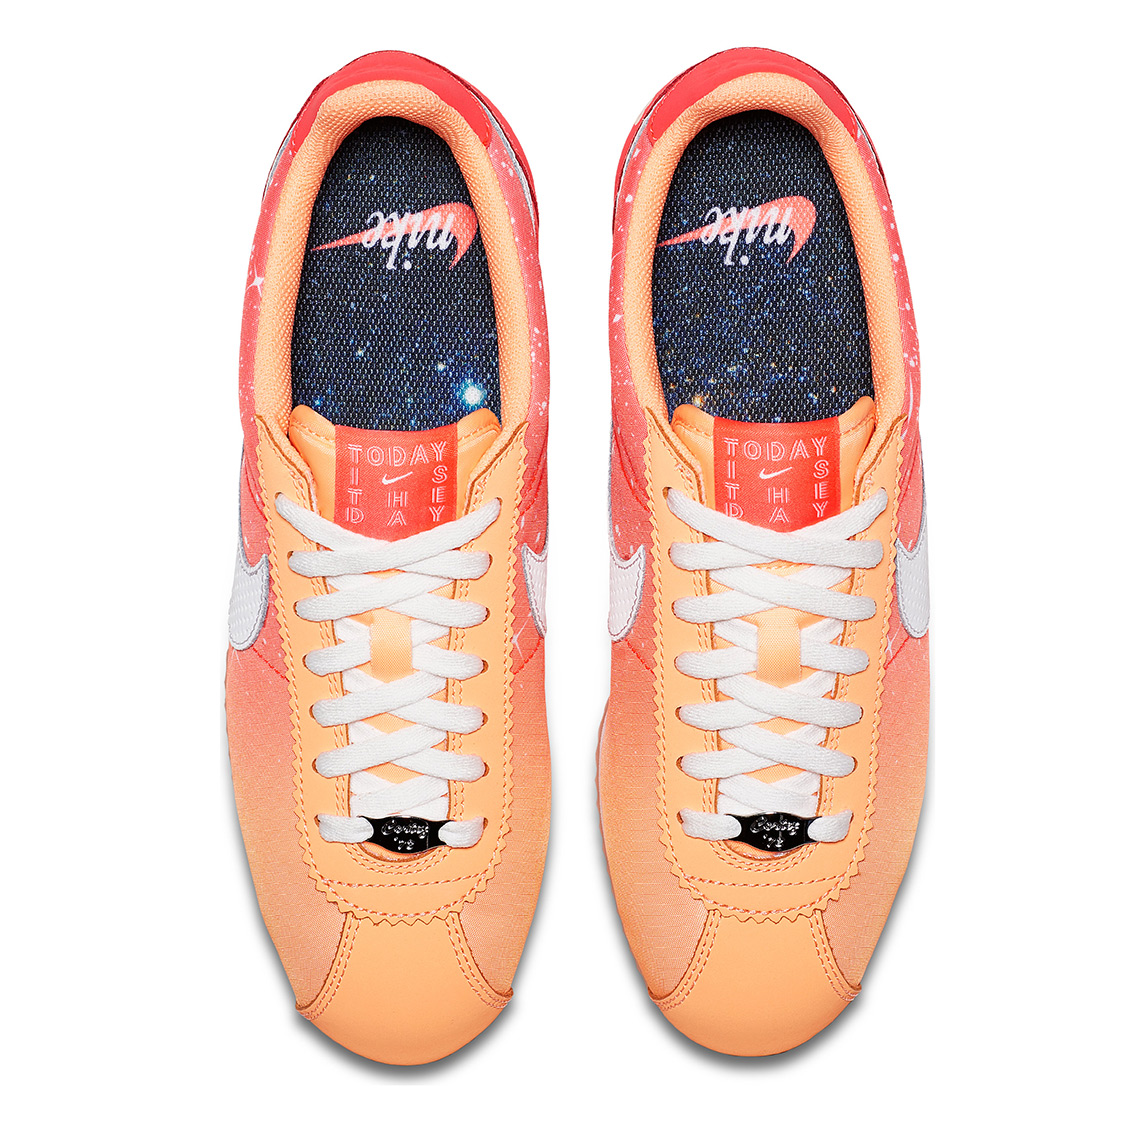 Nike Cortez Qixi Orange 2